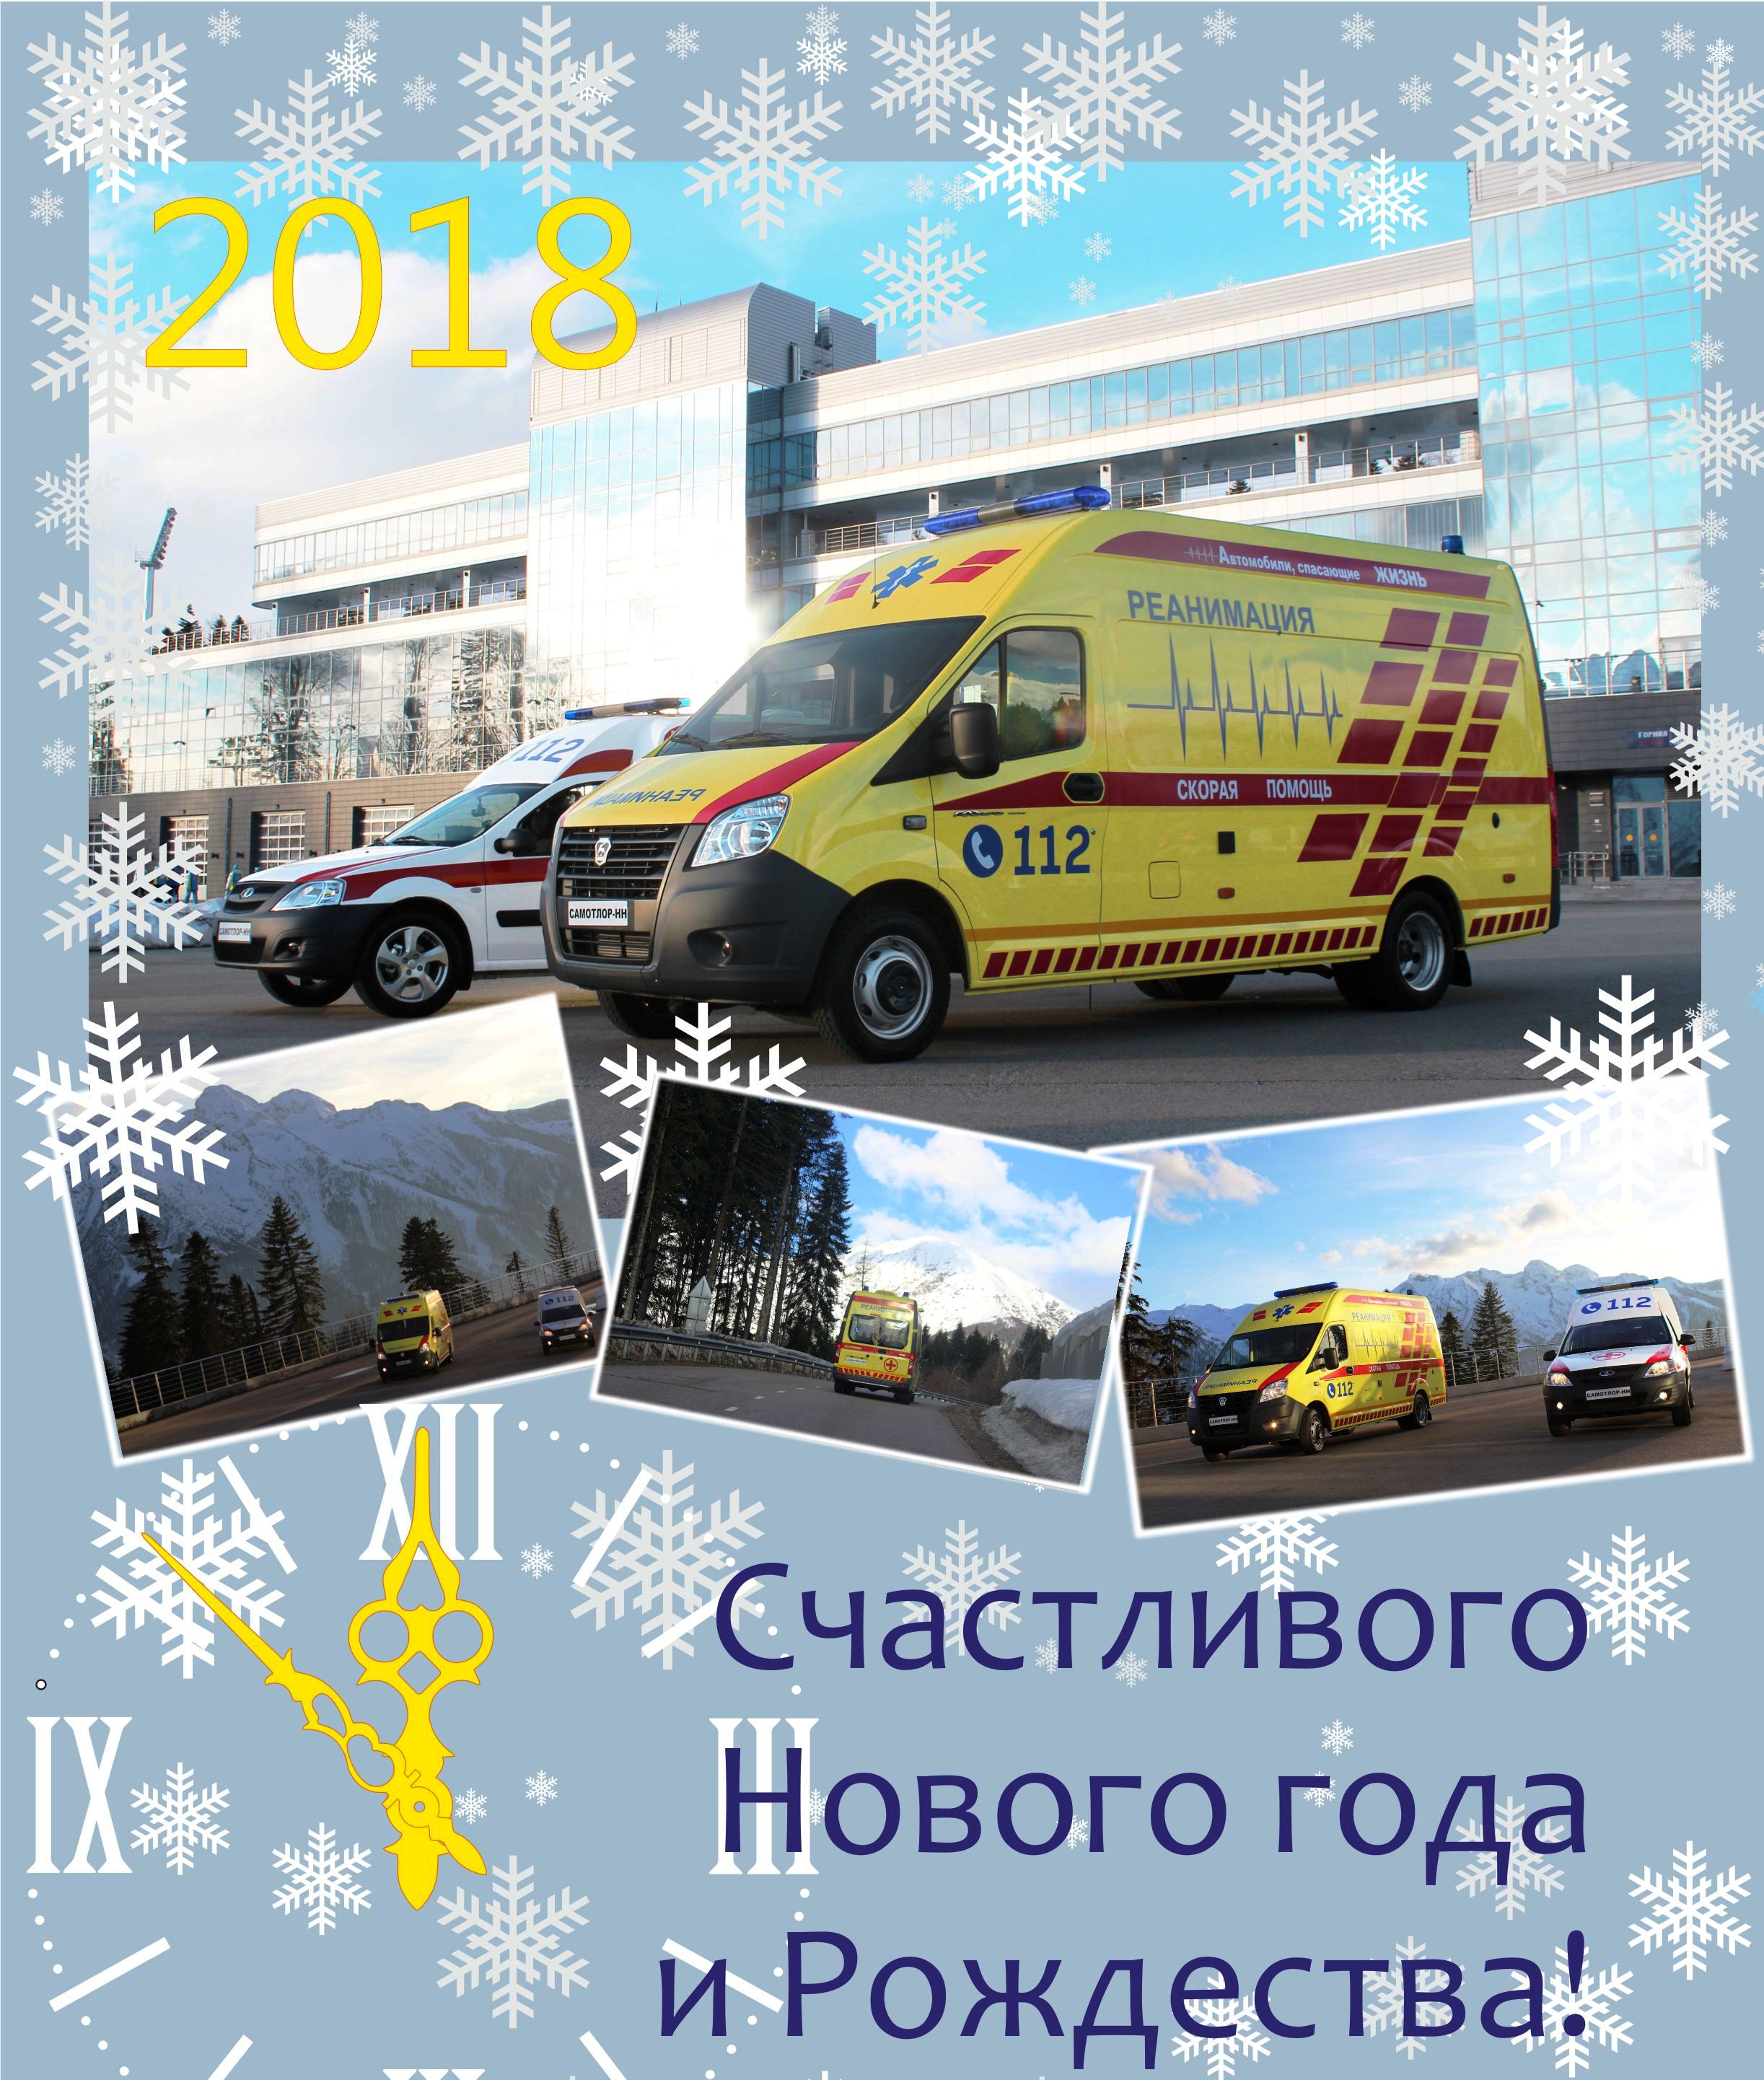 skoraya-medicinskaya-pomoshch-v-2018-god